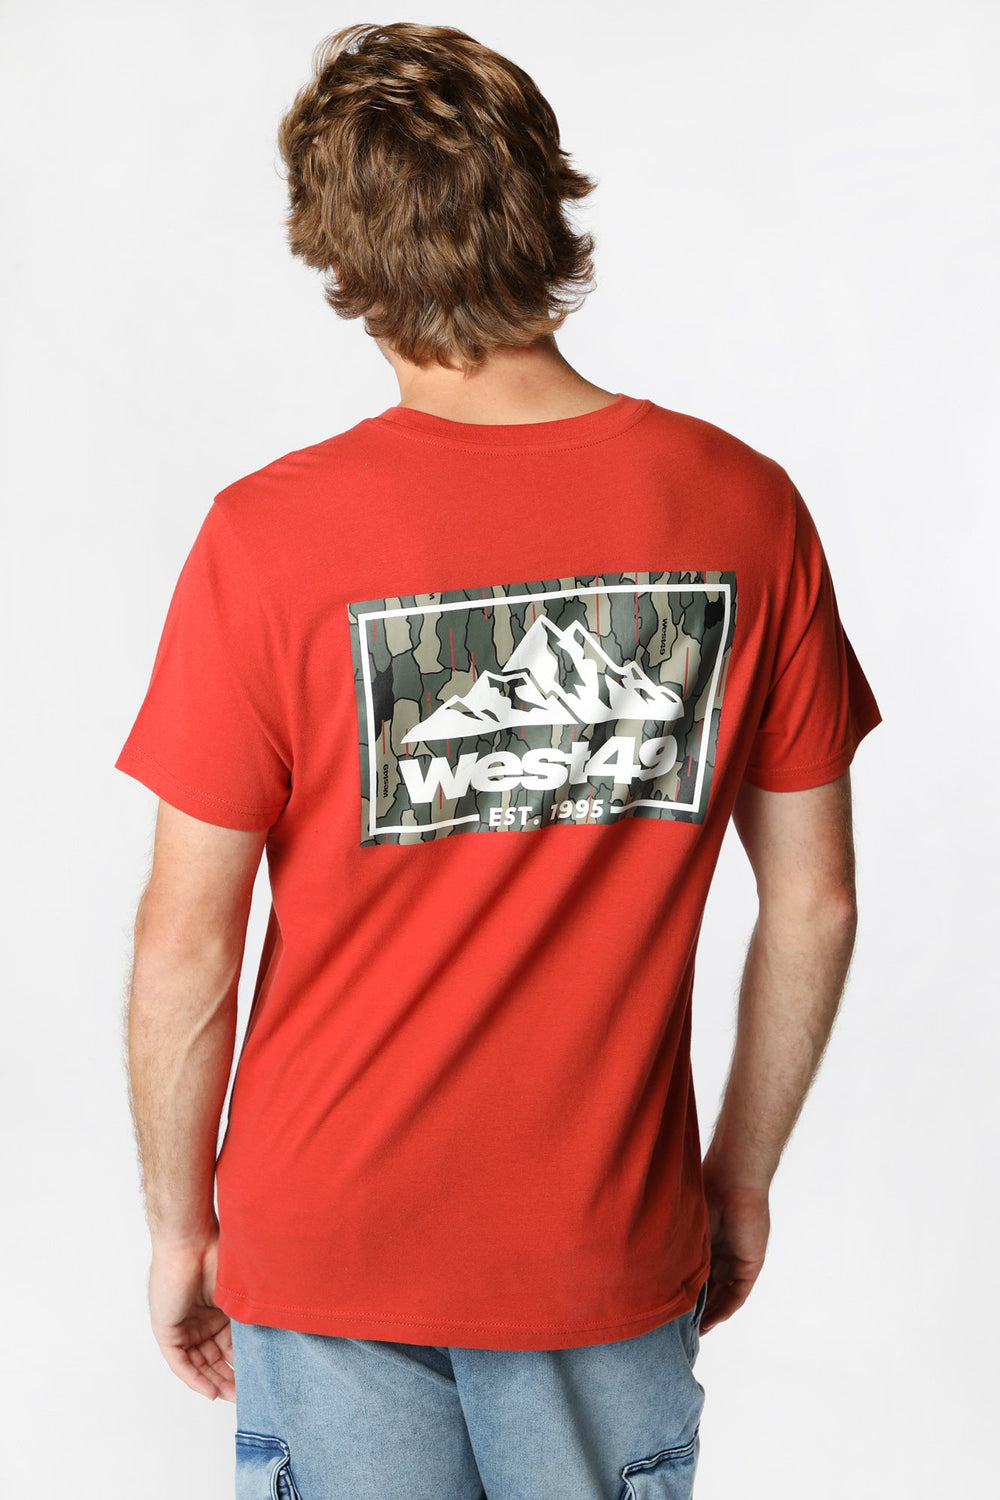 T-Shirt Imprimé Logo Camo Montagne West49 Homme T-Shirt Imprimé Logo Camo Montagne West49 Homme